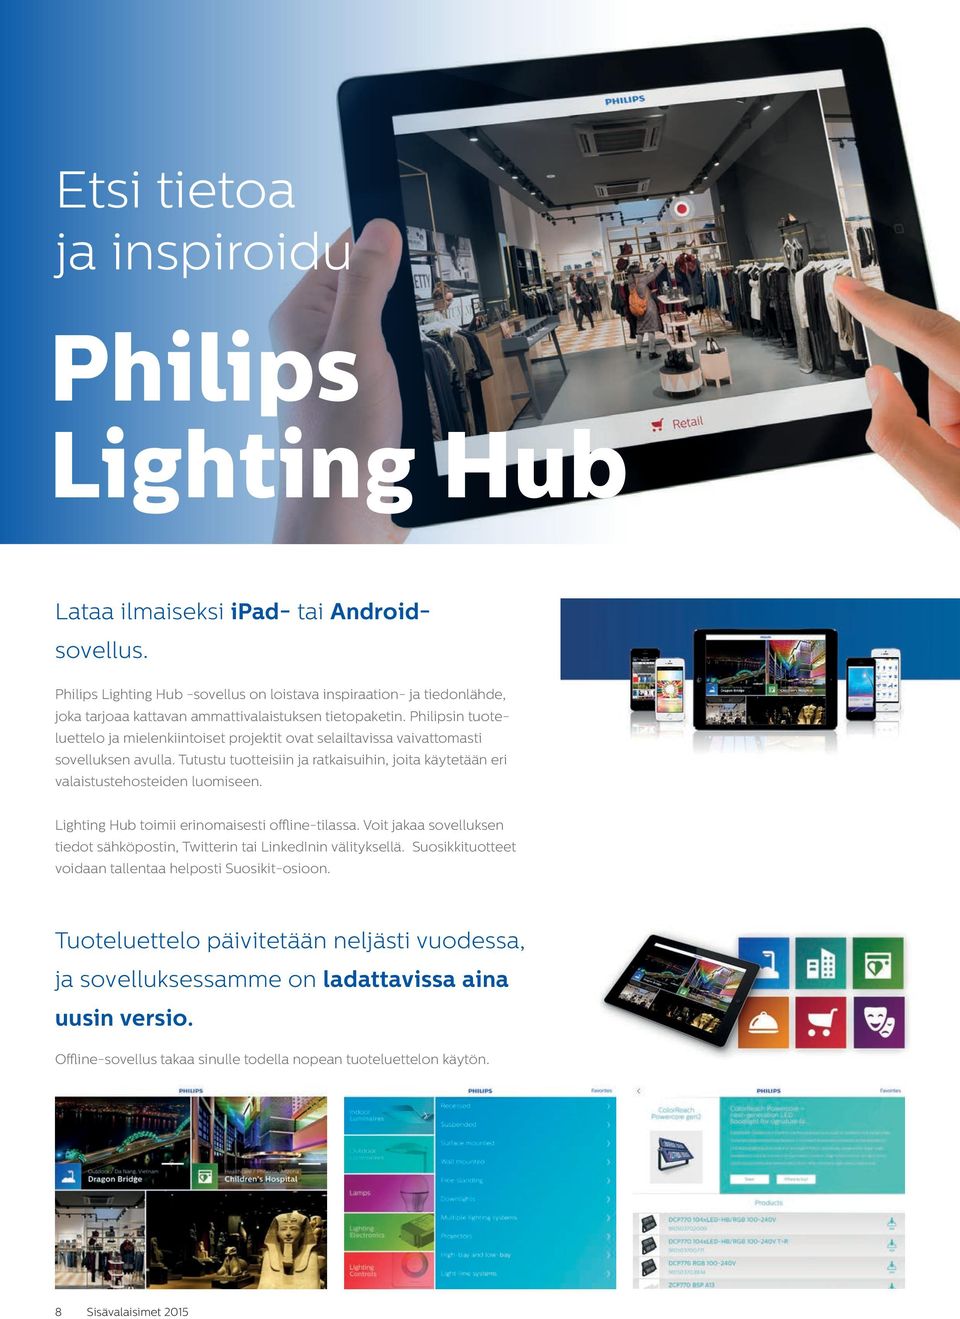 Philipsin tuote - luettelo ja mielenkiintoiset projektit ovat selailtavissa vaivattomasti sovelluksen avulla. Tutustu tuotteisiin ja ratkaisuihin, joita käytetään eri valaistustehosteiden luomiseen.